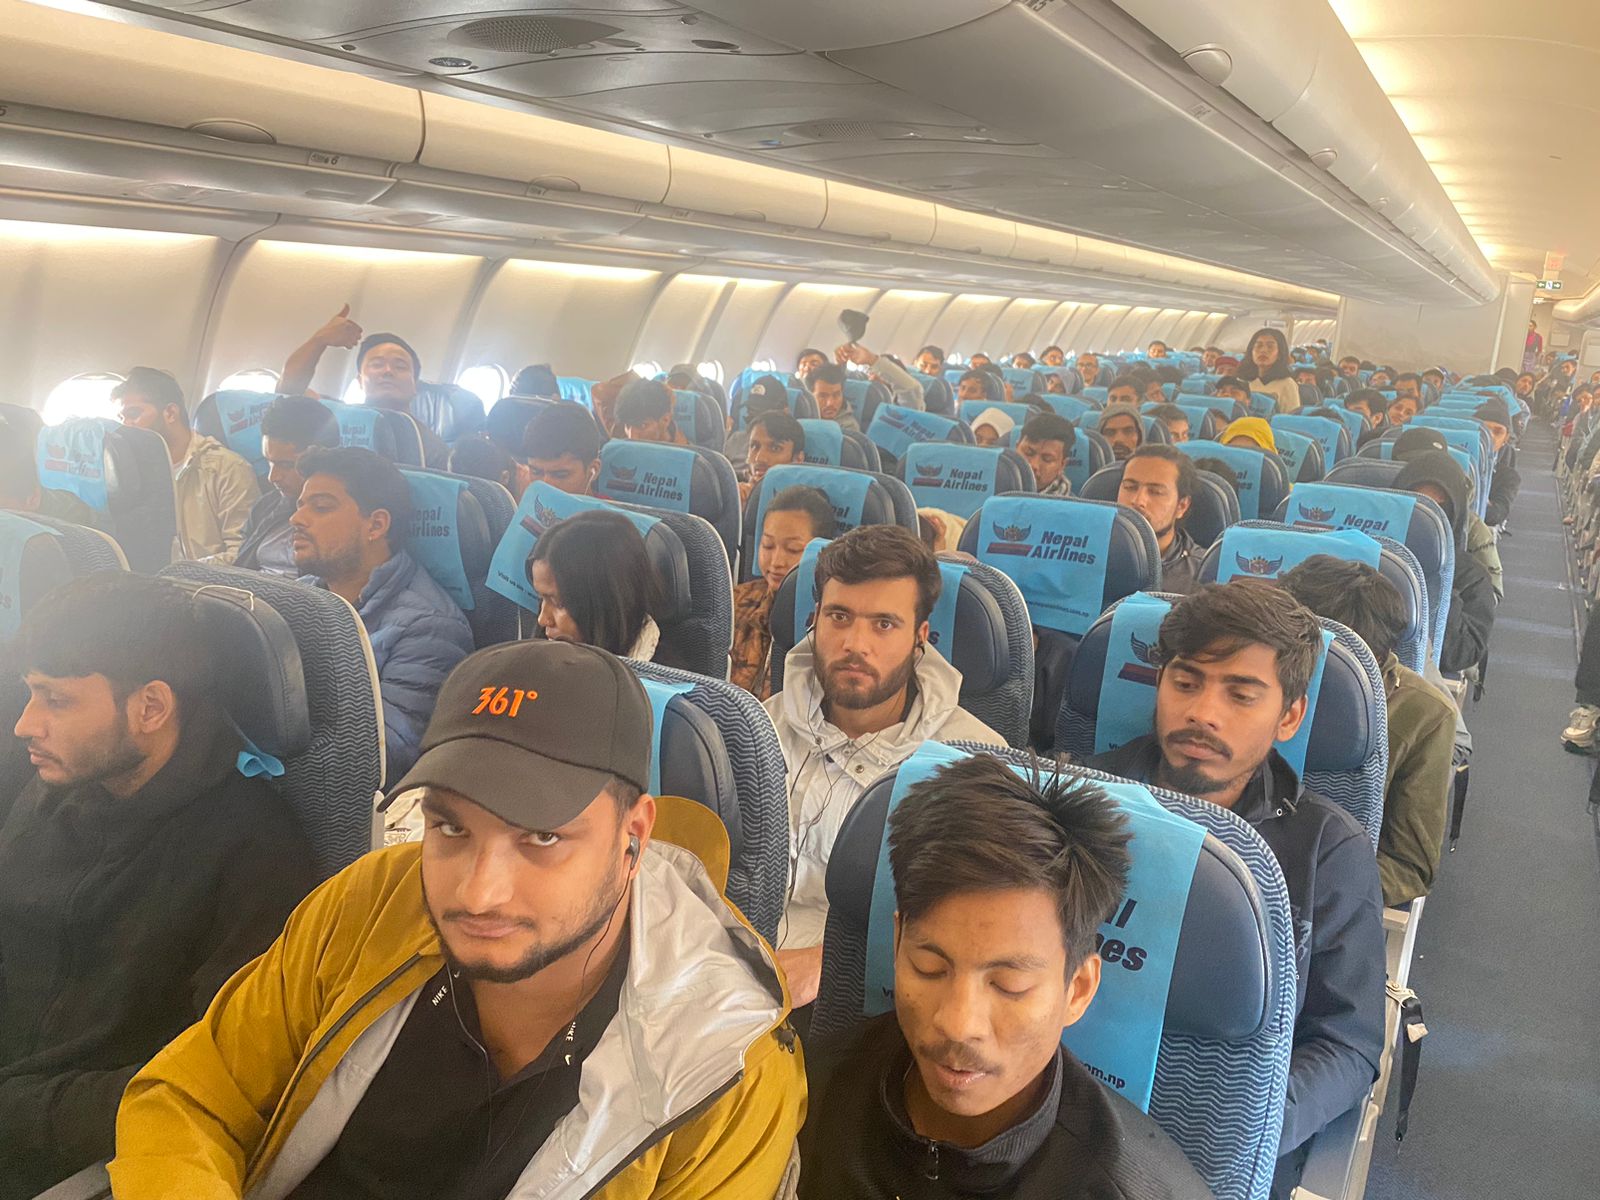 इजरायलबाट २५३ जना नेपाली नागरिक लिएर काठमाडौंको लागि उड्यो विमान ( फोटो फिचर )